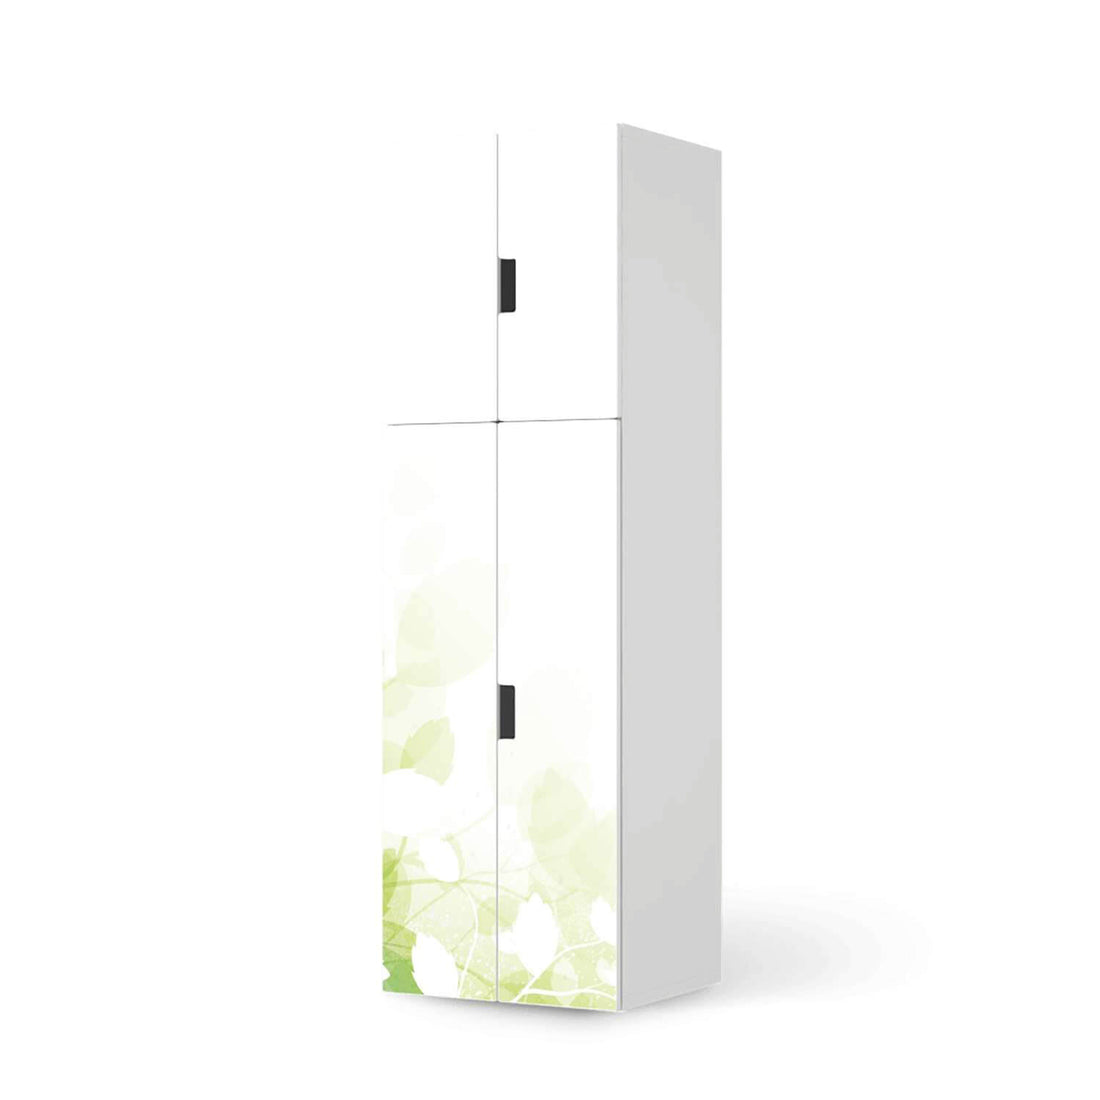 Selbstklebende Folie Flower Light - IKEA Stuva kombiniert - 2 große Türen und 2 kleine Türen (Kombination 2)  - weiss